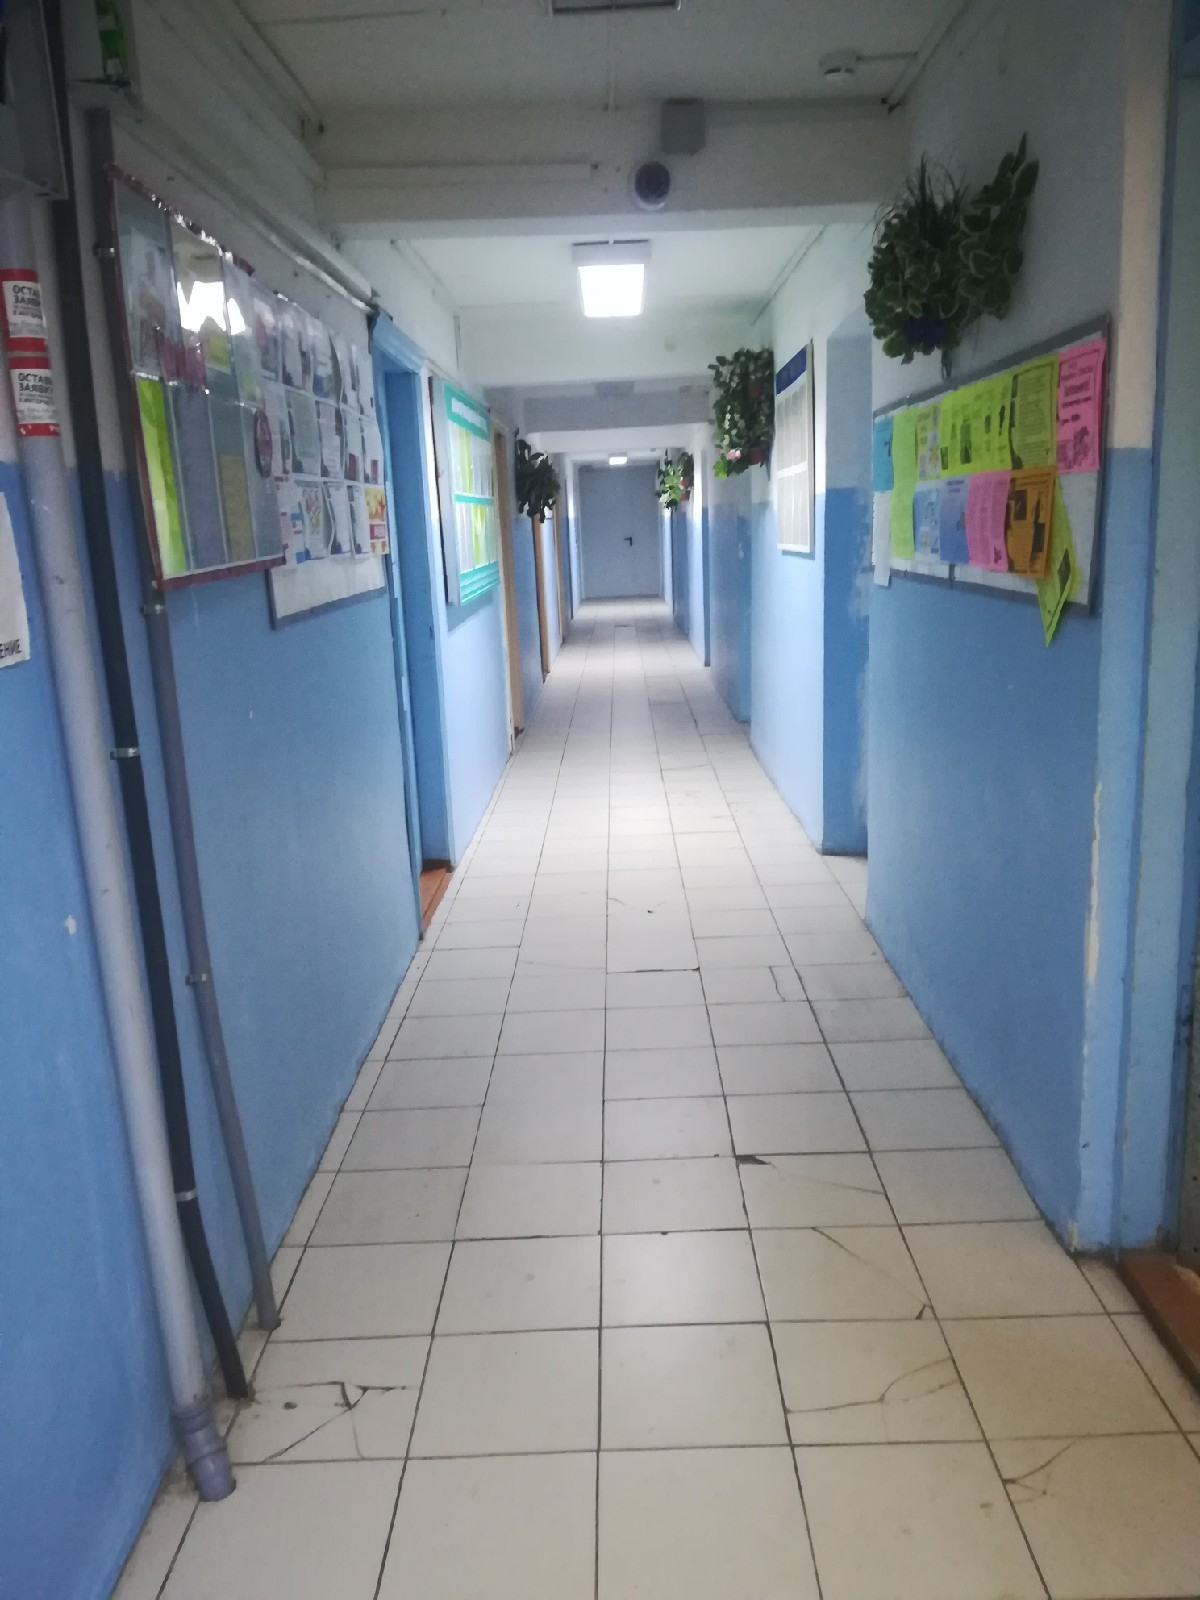 Студенты в Сыктывкаре: «Нас заставили убирать срач, который мы не разводили»